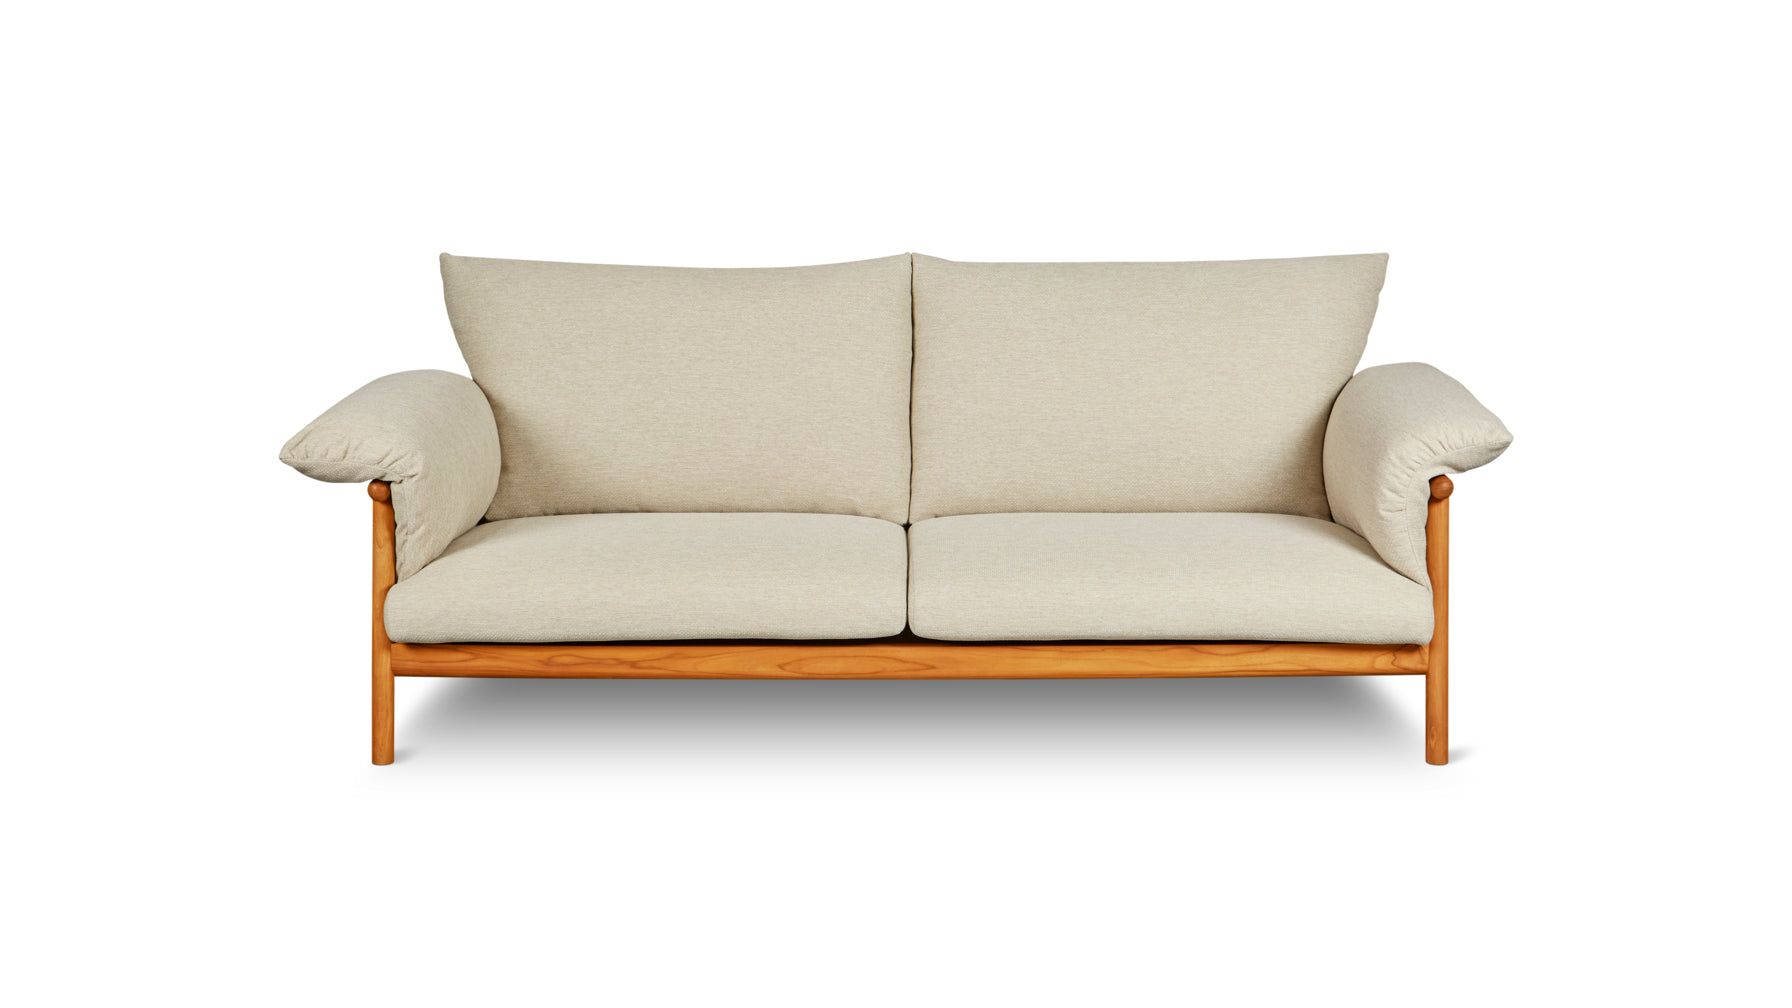 Pillow Talk Outdoor Sofa, Sandy - Image 1